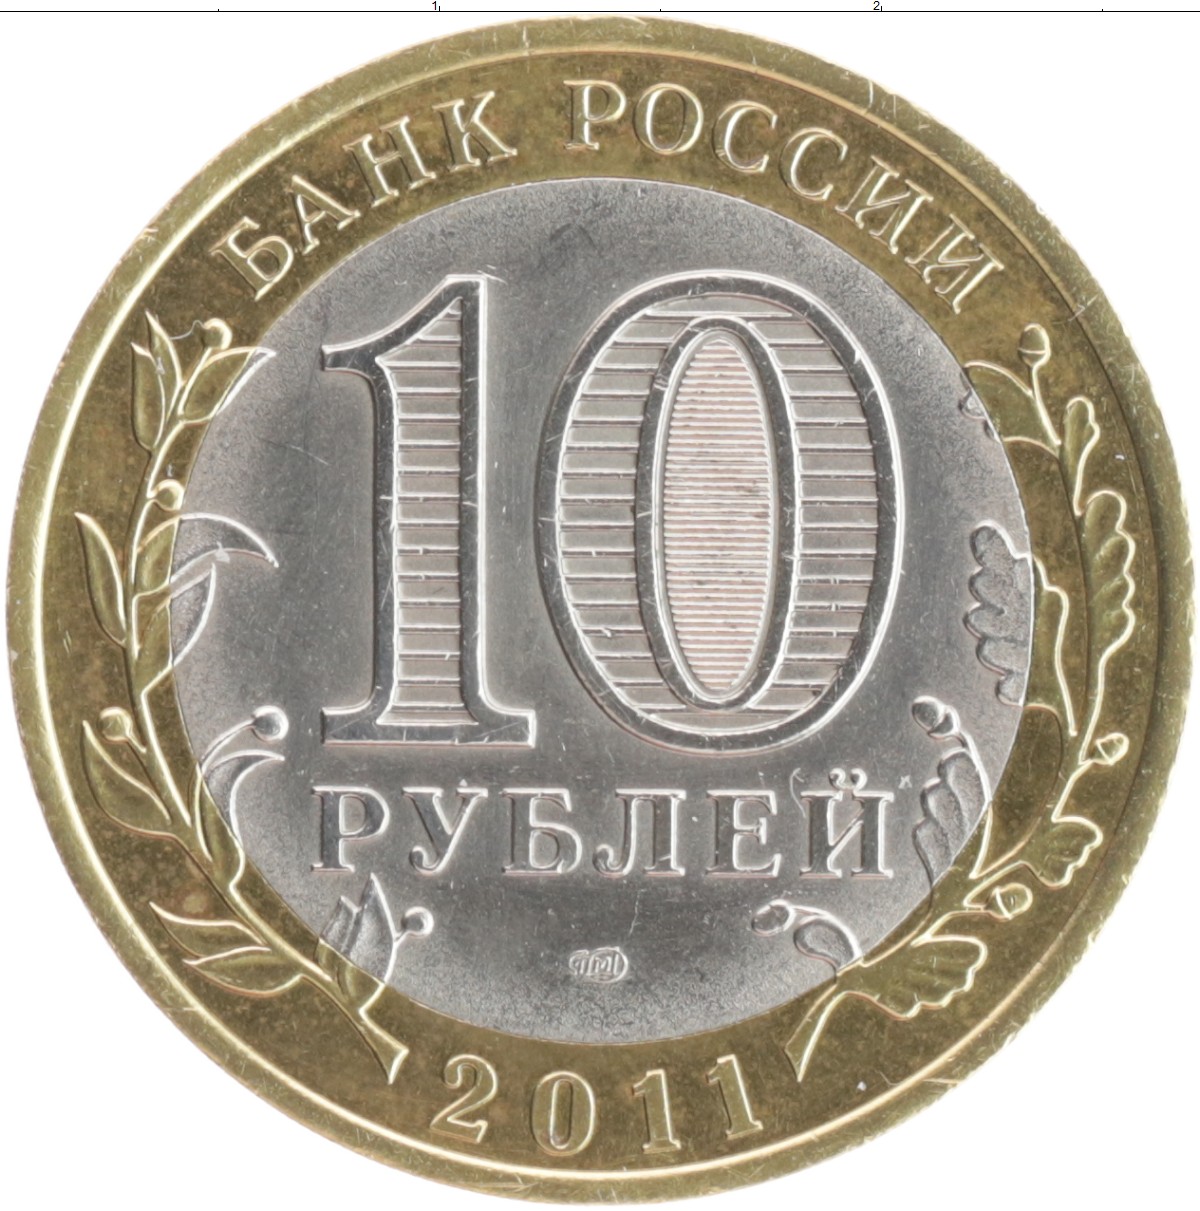 10 рублей 200 лет. Биметалл, Приозерск, 2008 г., СПМД.